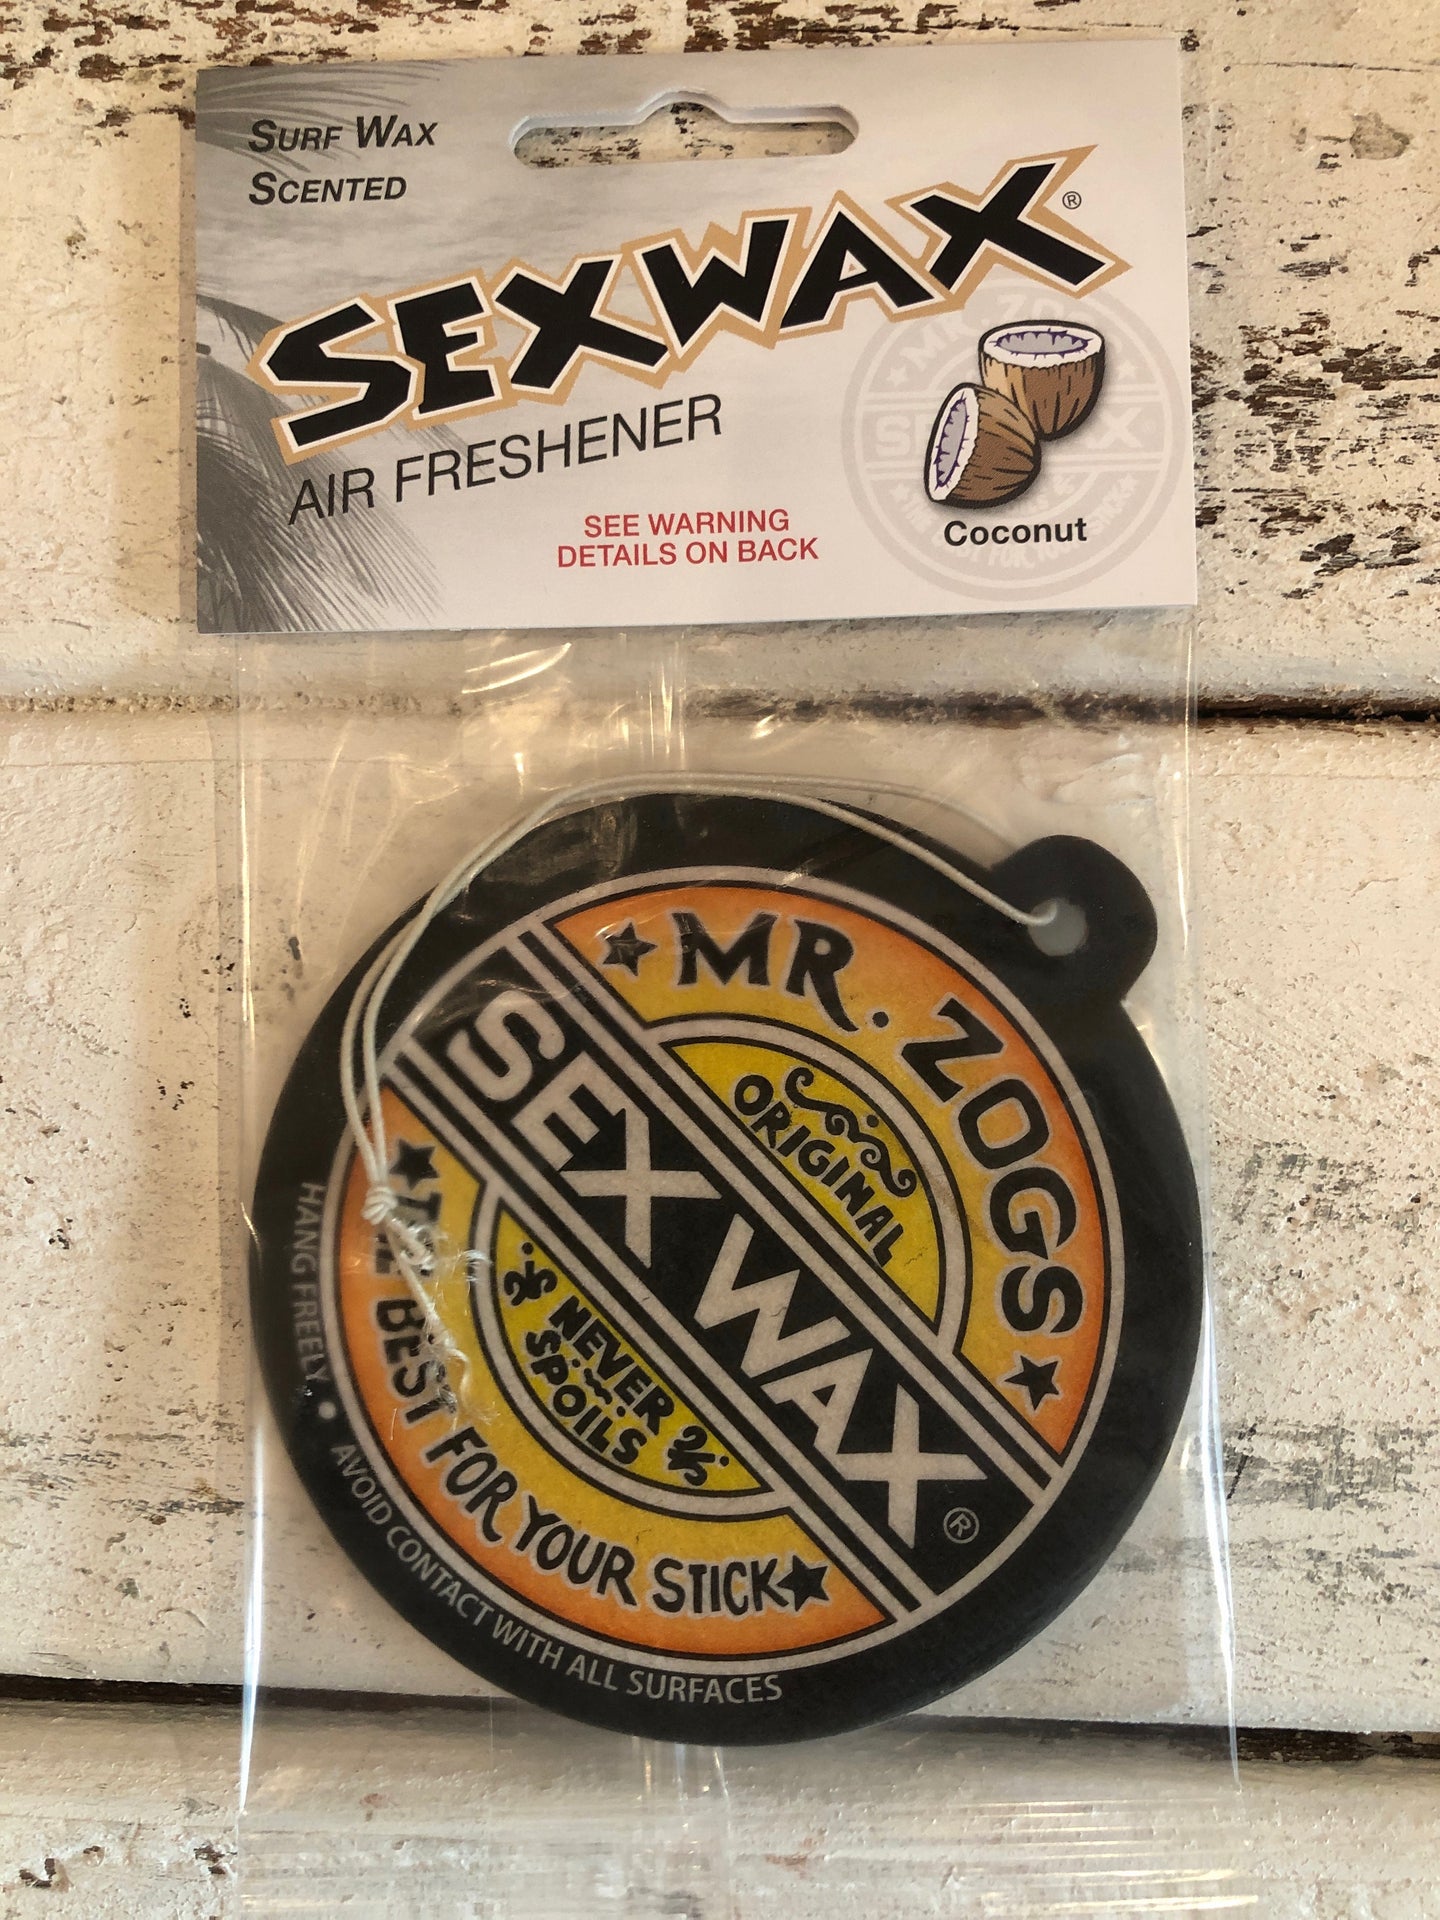 Sex Wax Air Freshener – 3 Seas